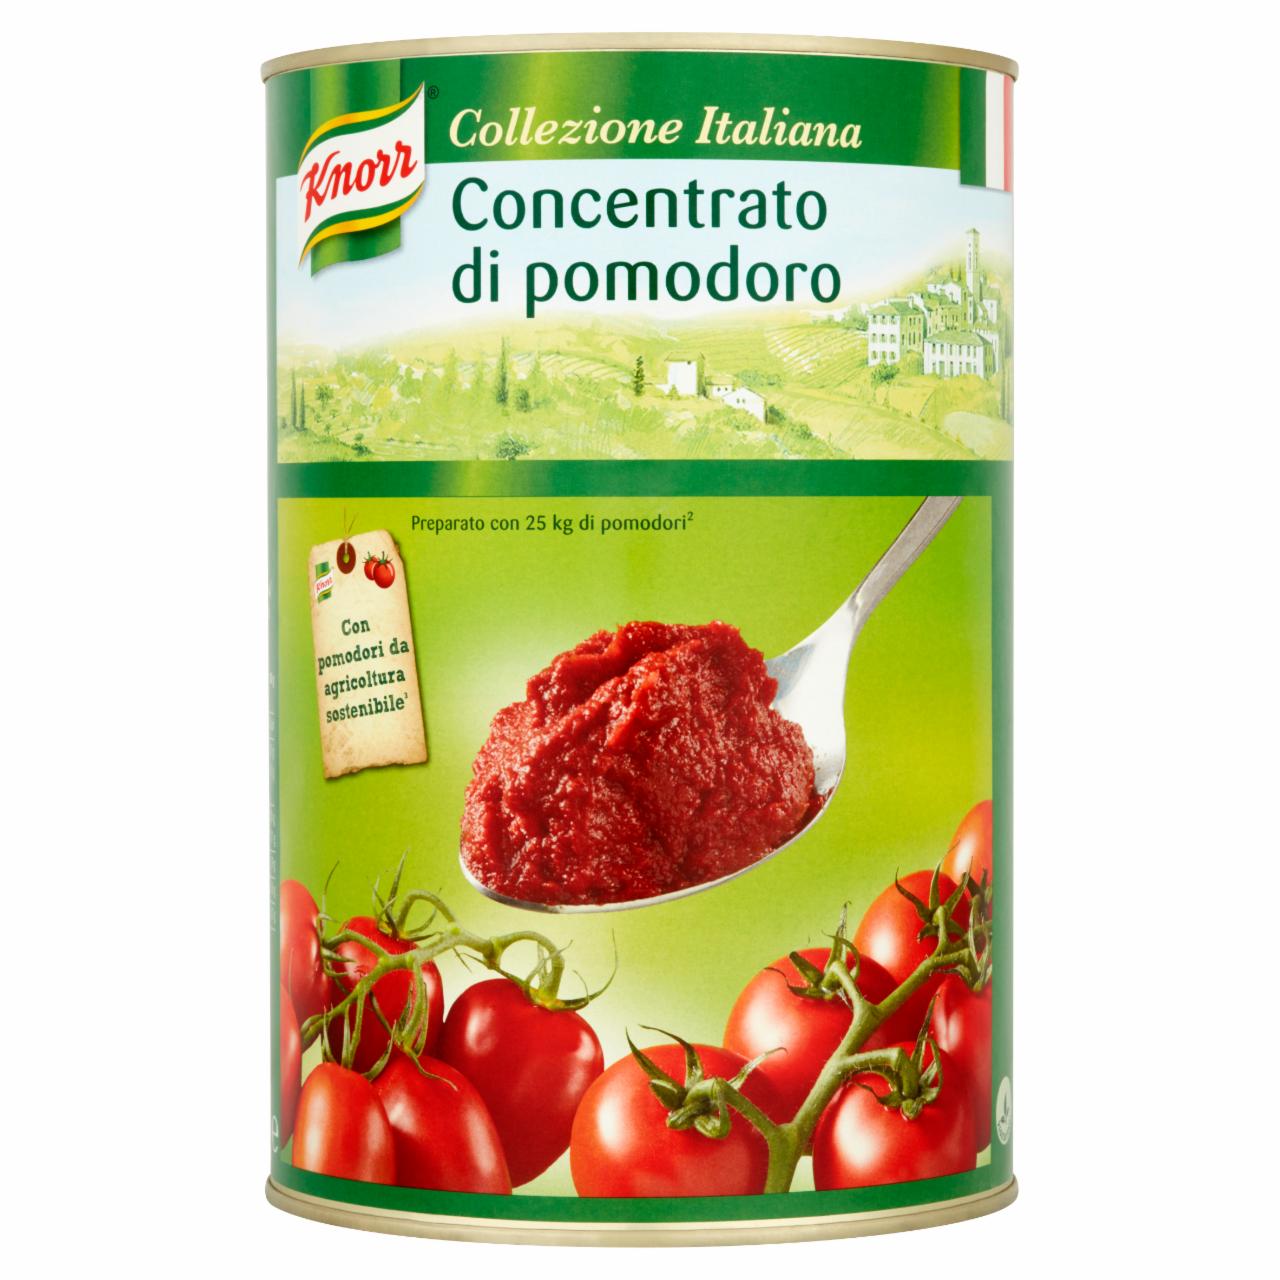 Zdjęcia - Knorr Koncentrat pomidorowy 4,5 kg